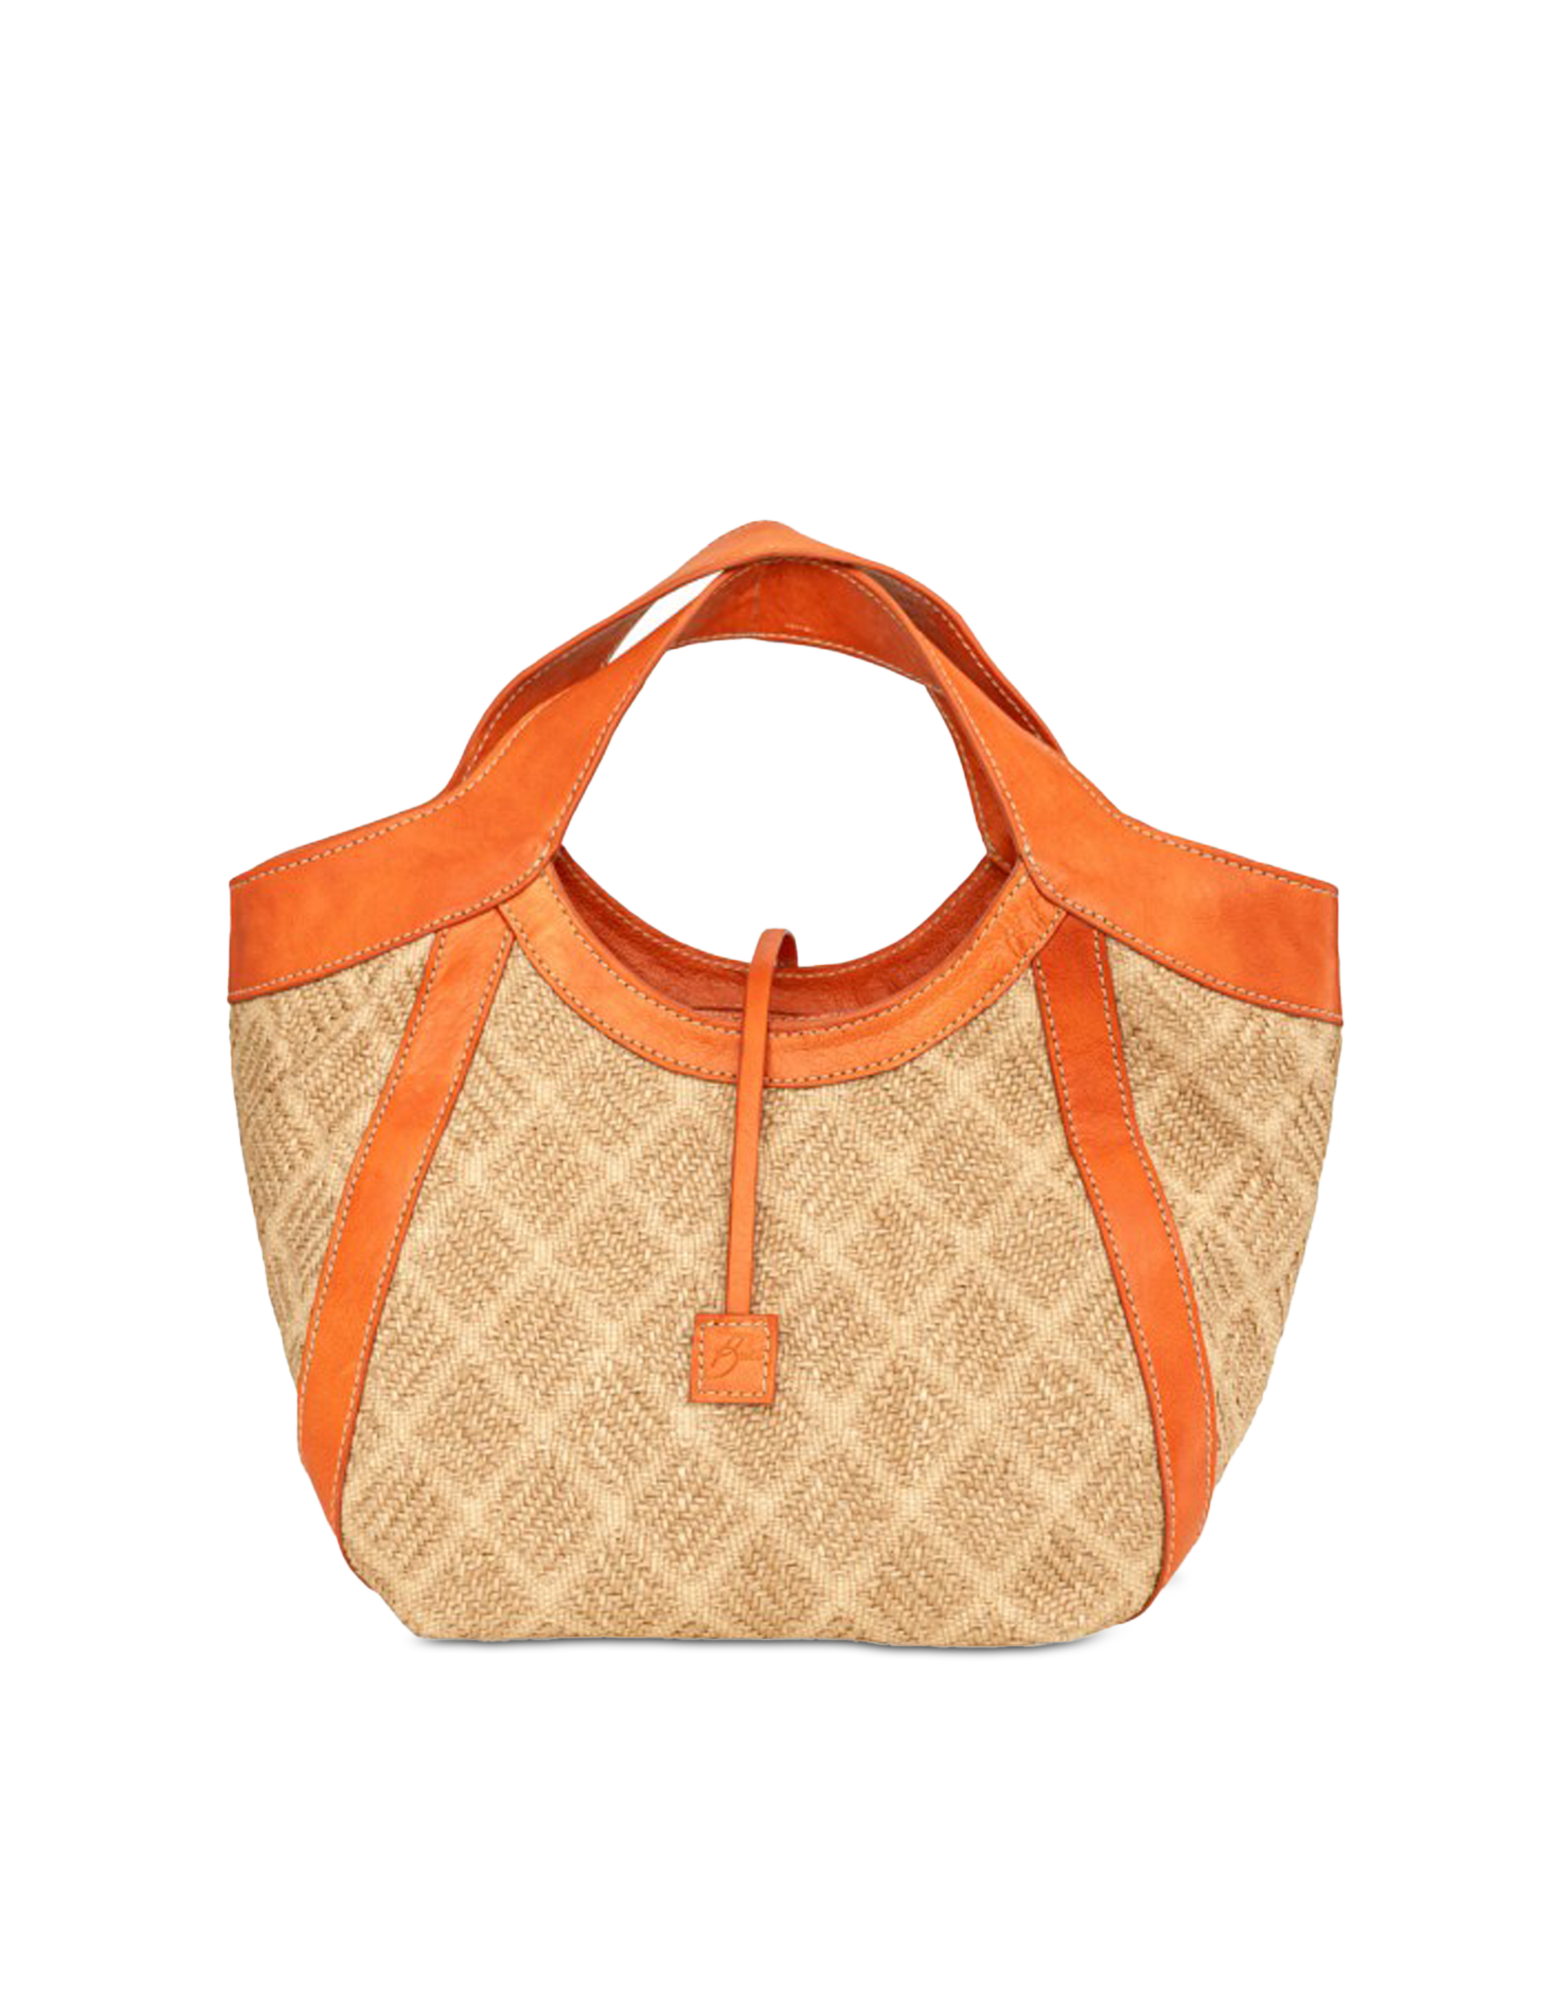 Buti Lisa Orange Straw & Leather Small Hobo Bag